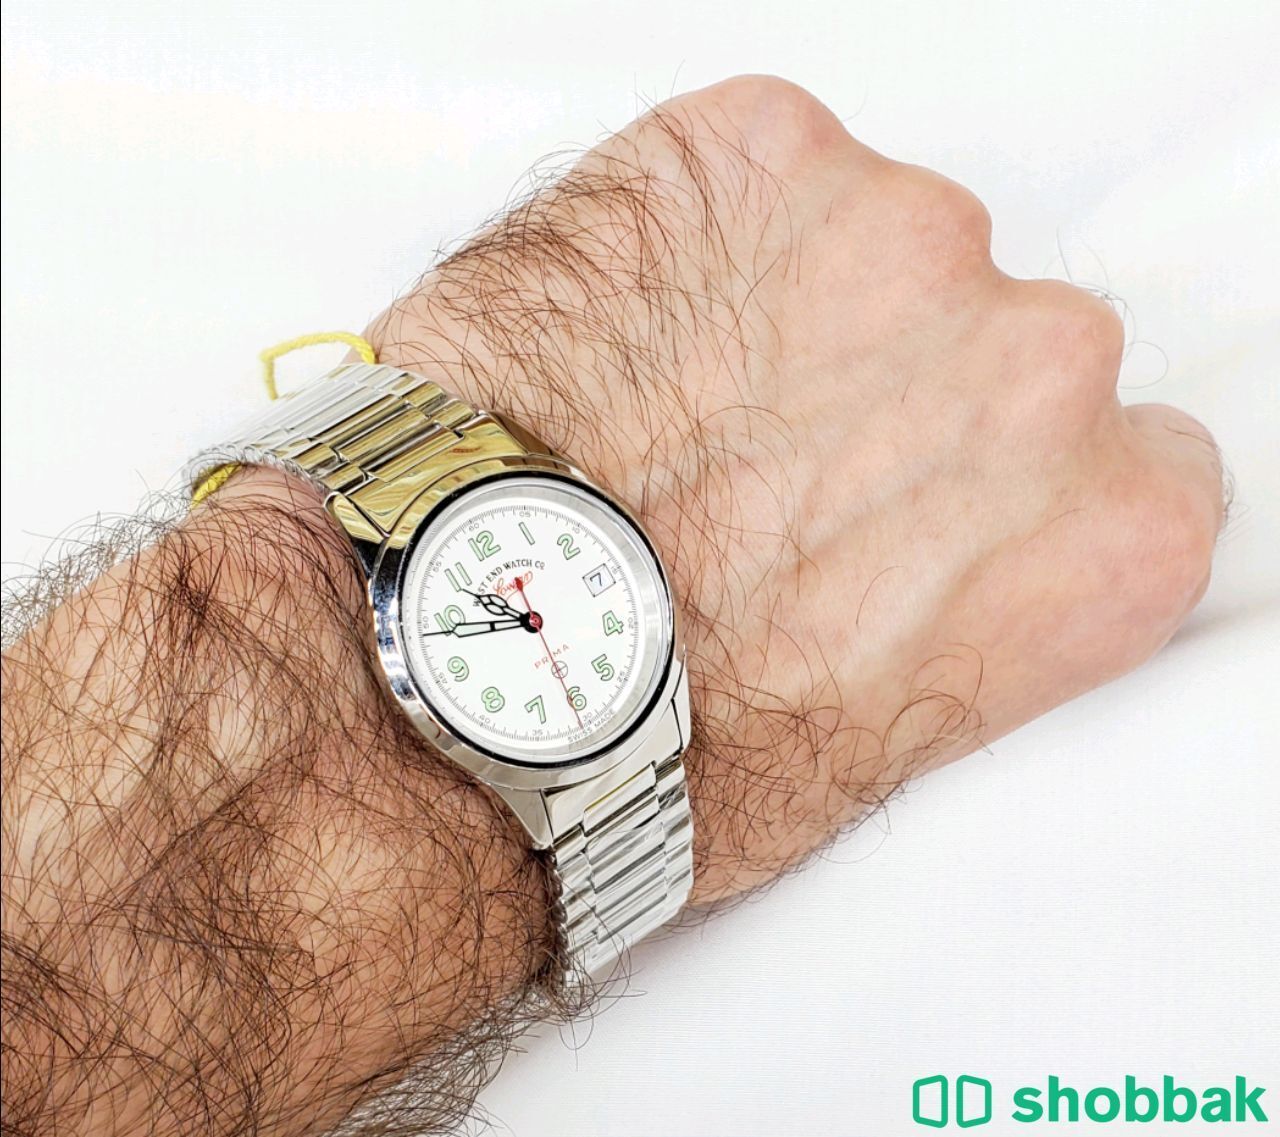 ساعة وست اند ام صليب الاصلية للبيع ب 1500 ريال جديدة Shobbak Saudi Arabia